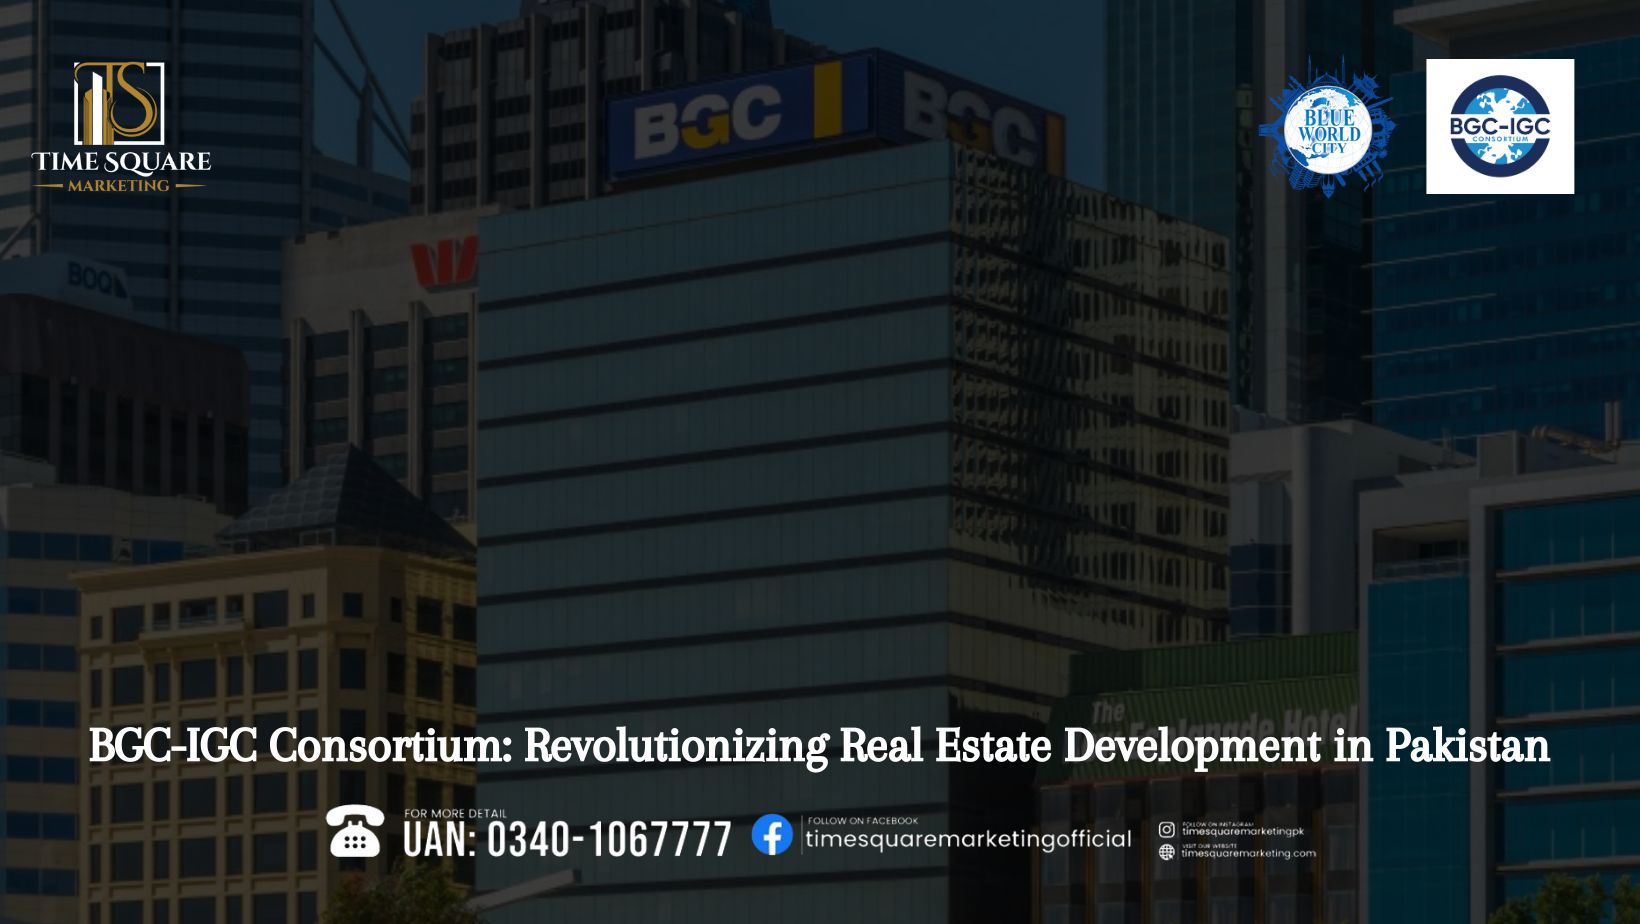 BGC-IGC Consortium Revolutionizing Real Estate Development in Pakistan